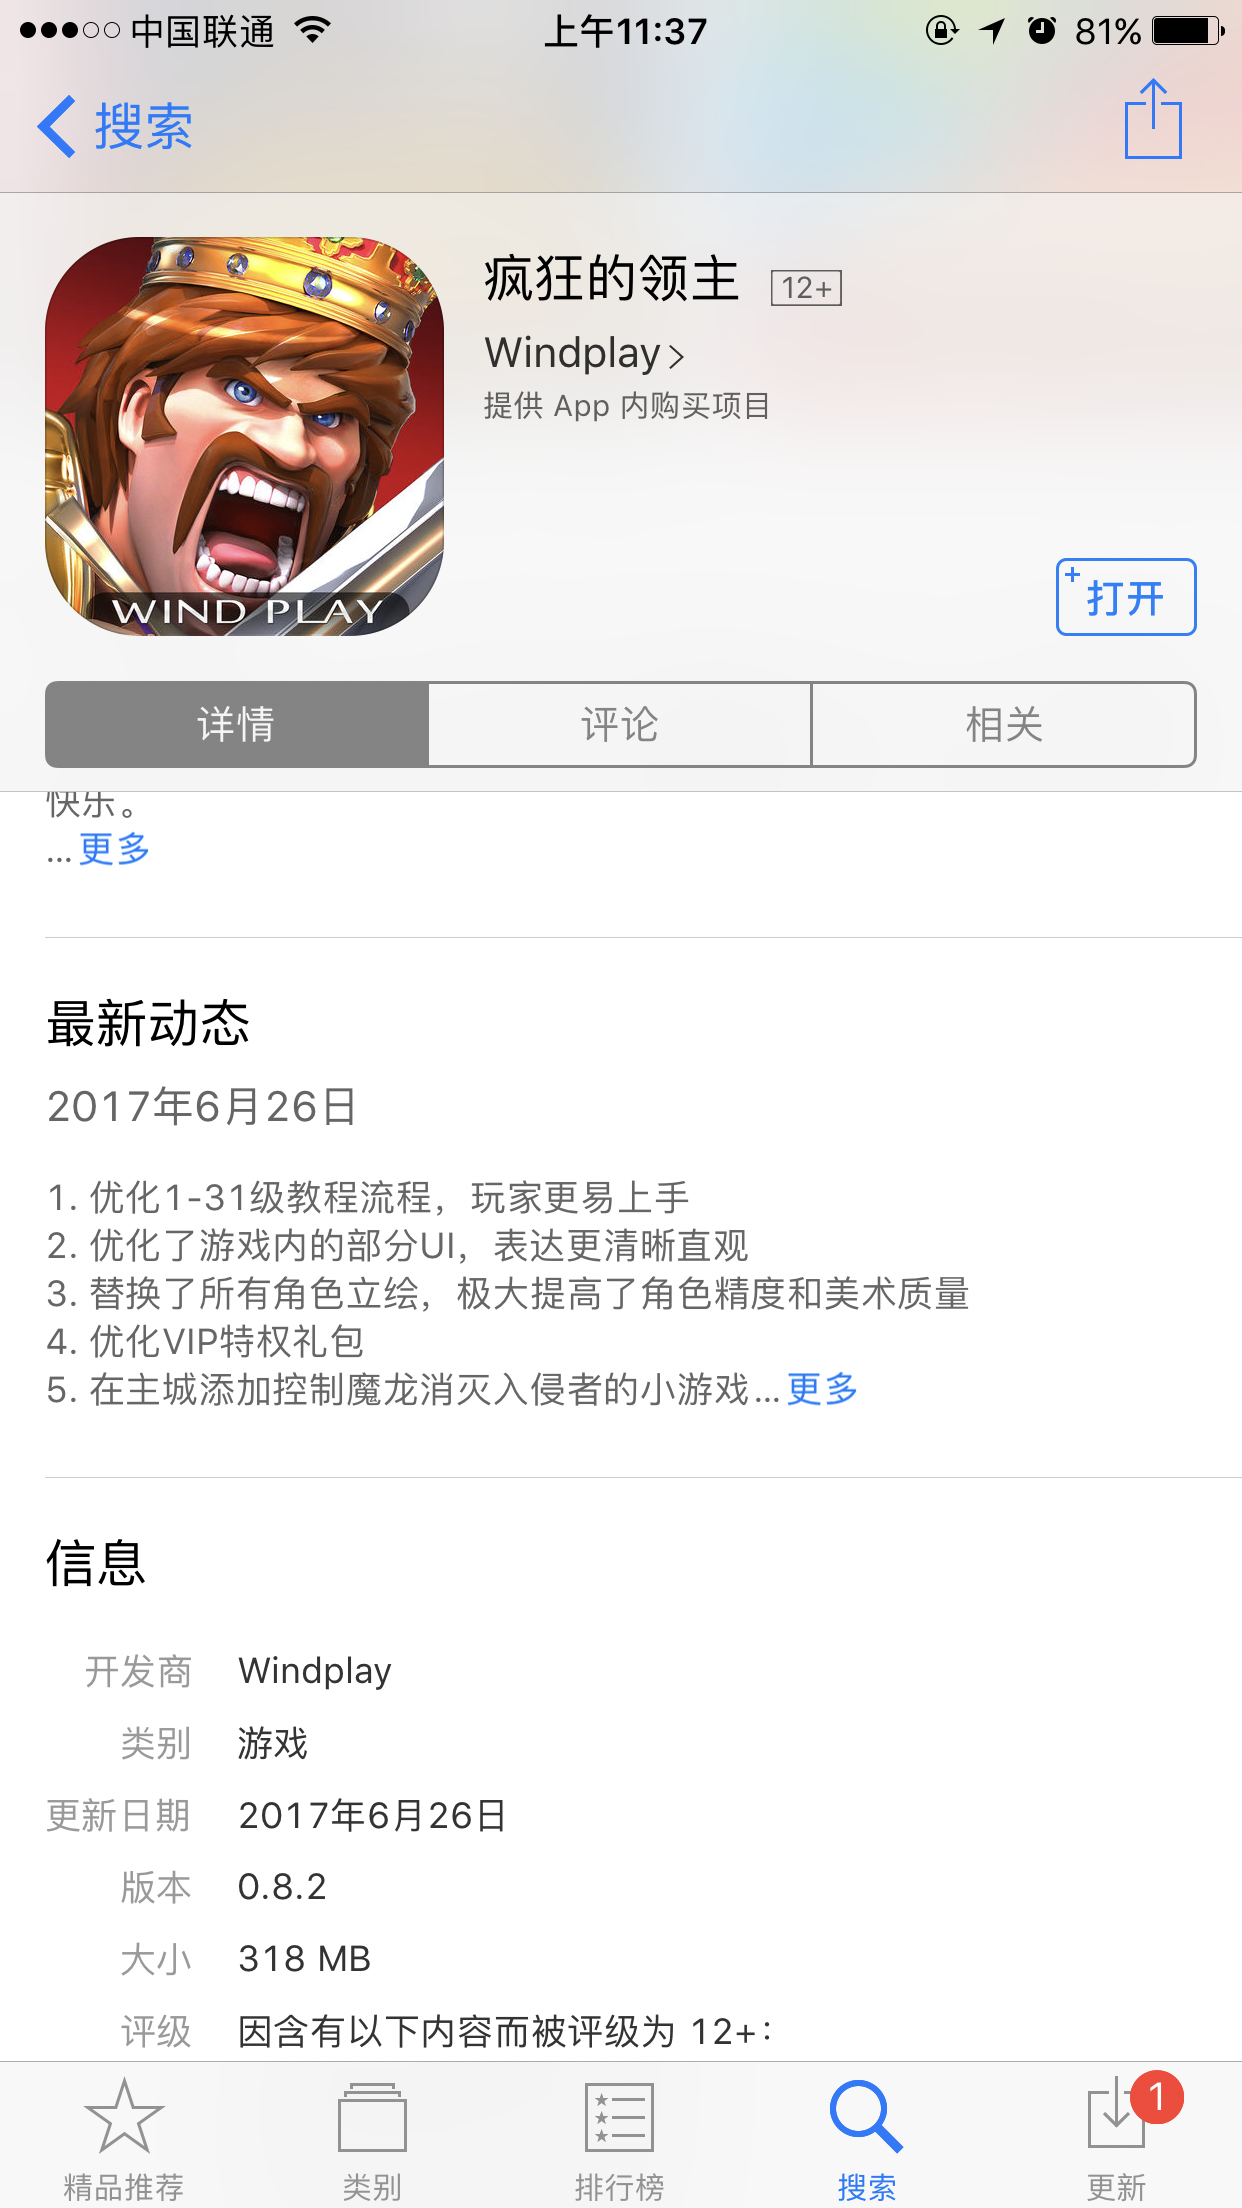 疯狂的领主iOS今日开放下载~\(≧▽≦)/~啦啦啦